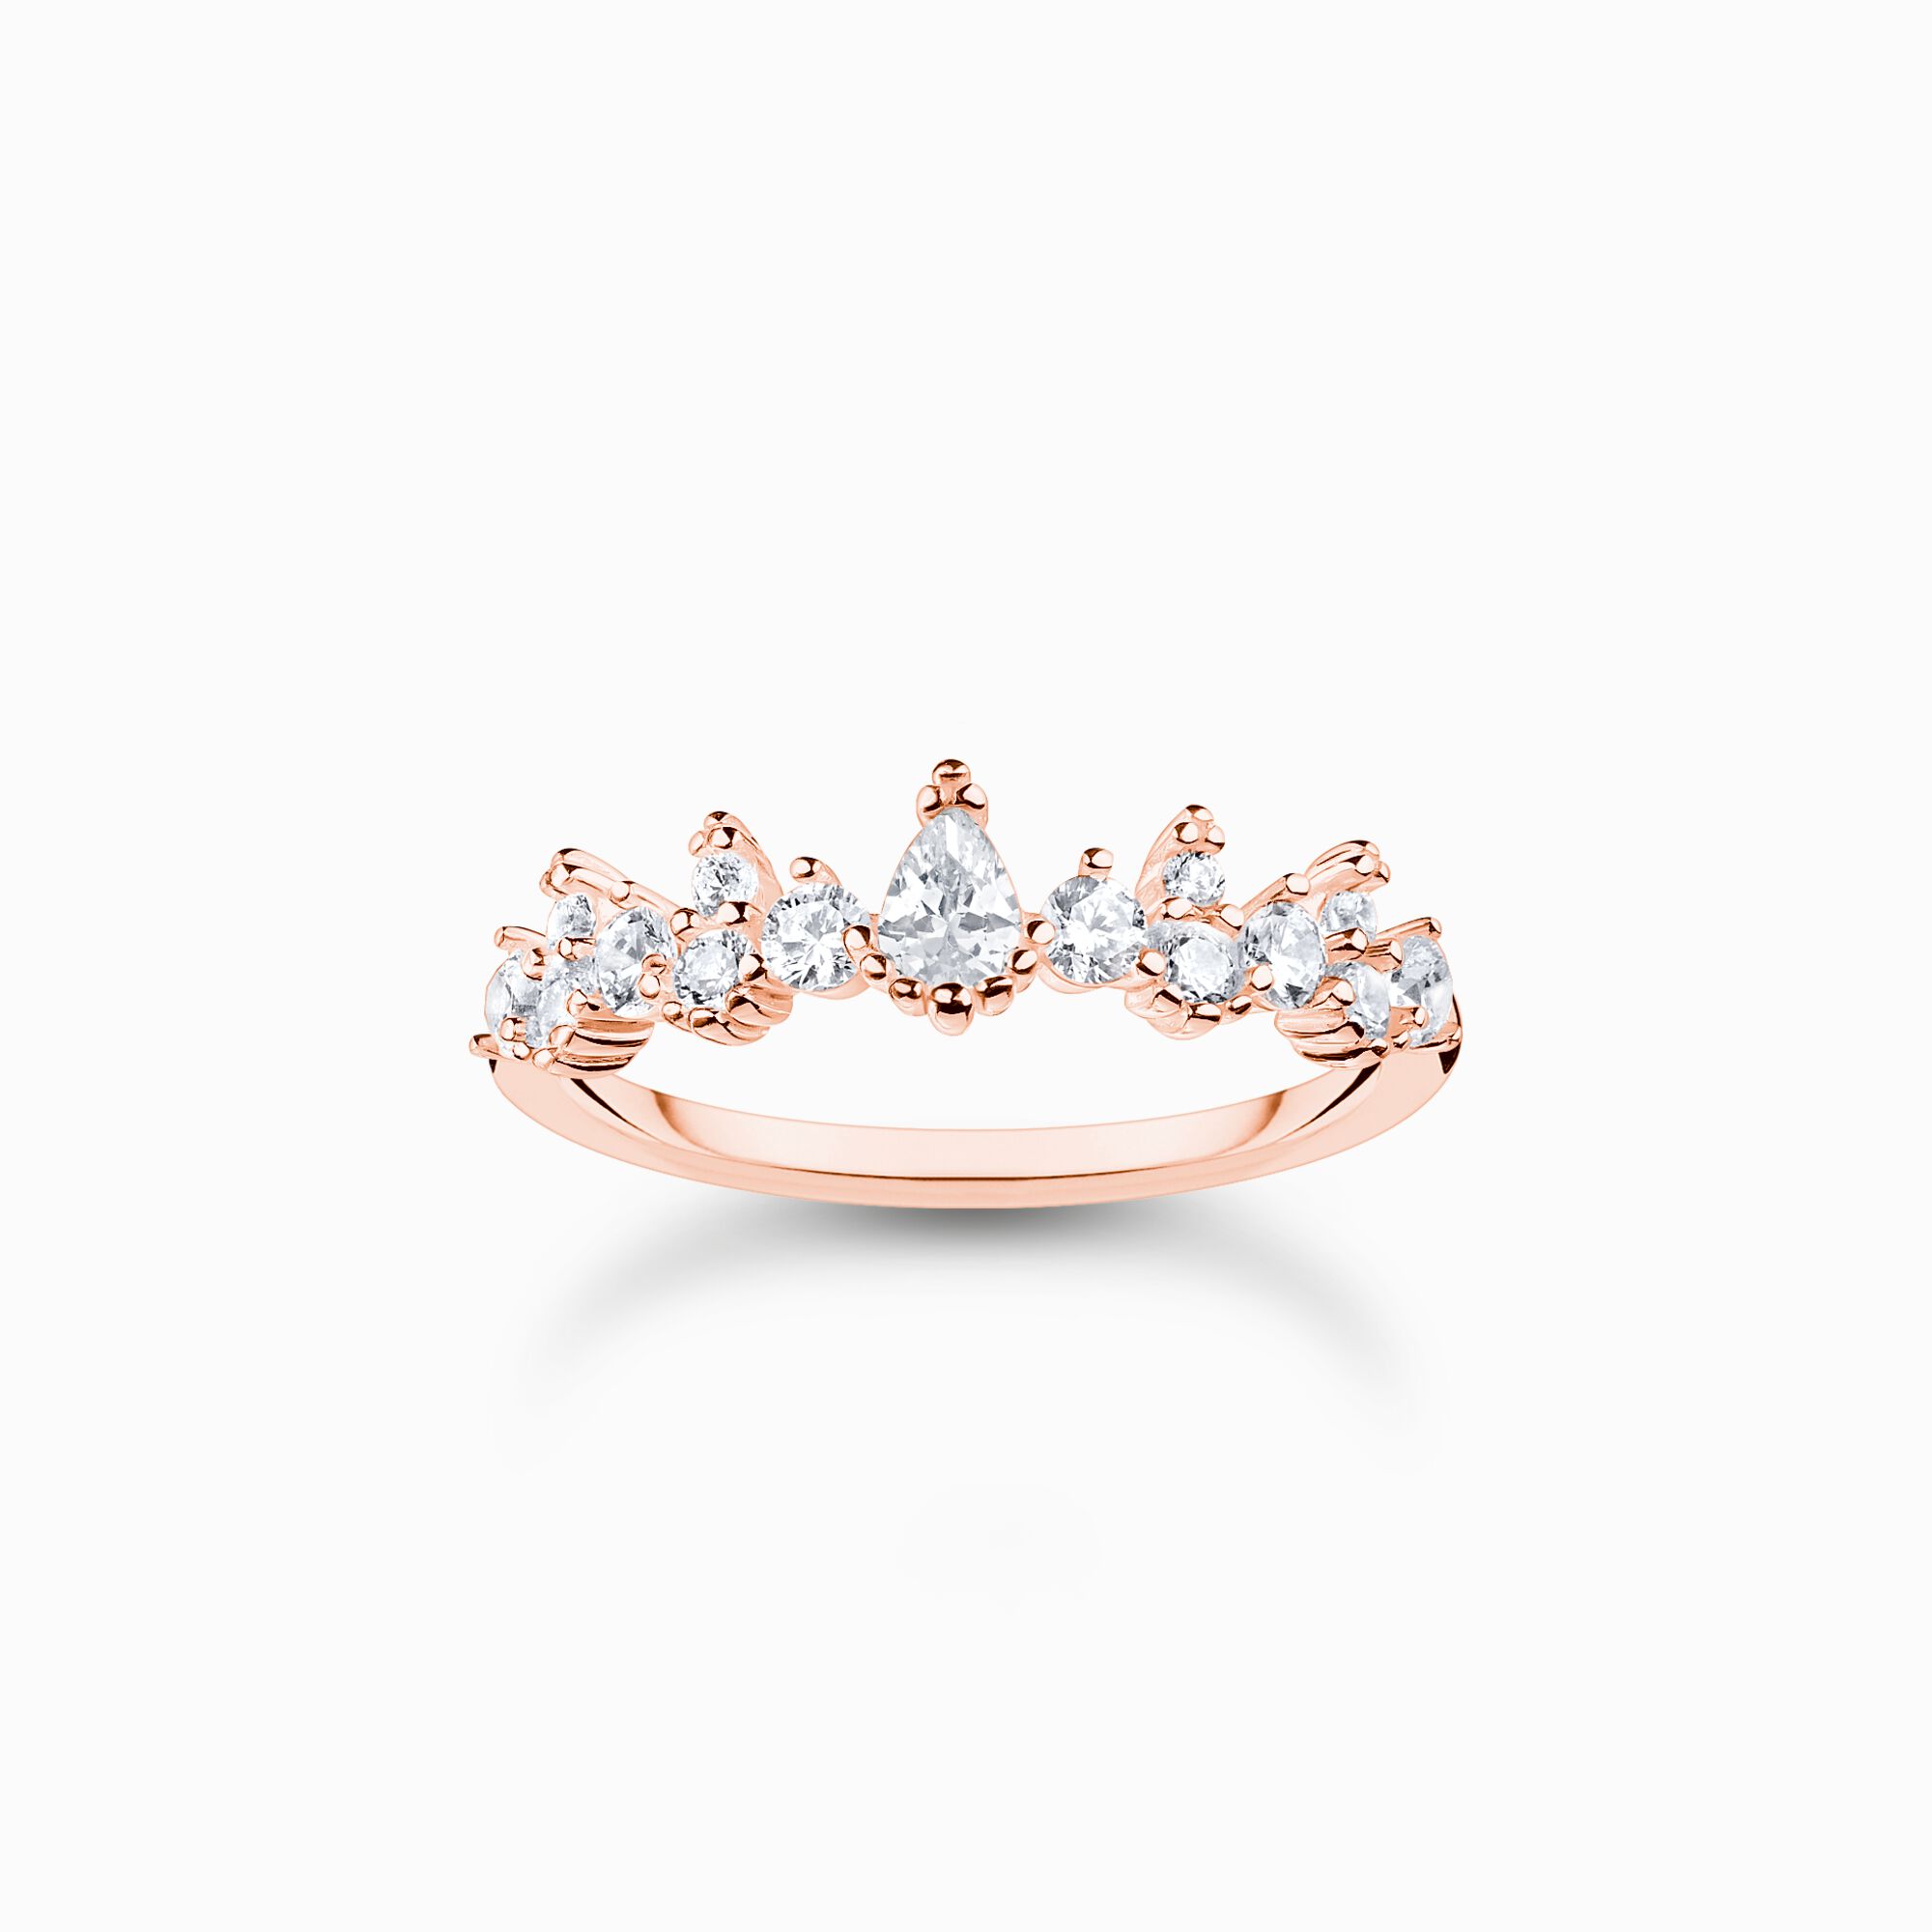 Anillo cristales de hielo oro rosado de la colección Charming Collection en la tienda online de THOMAS SABO